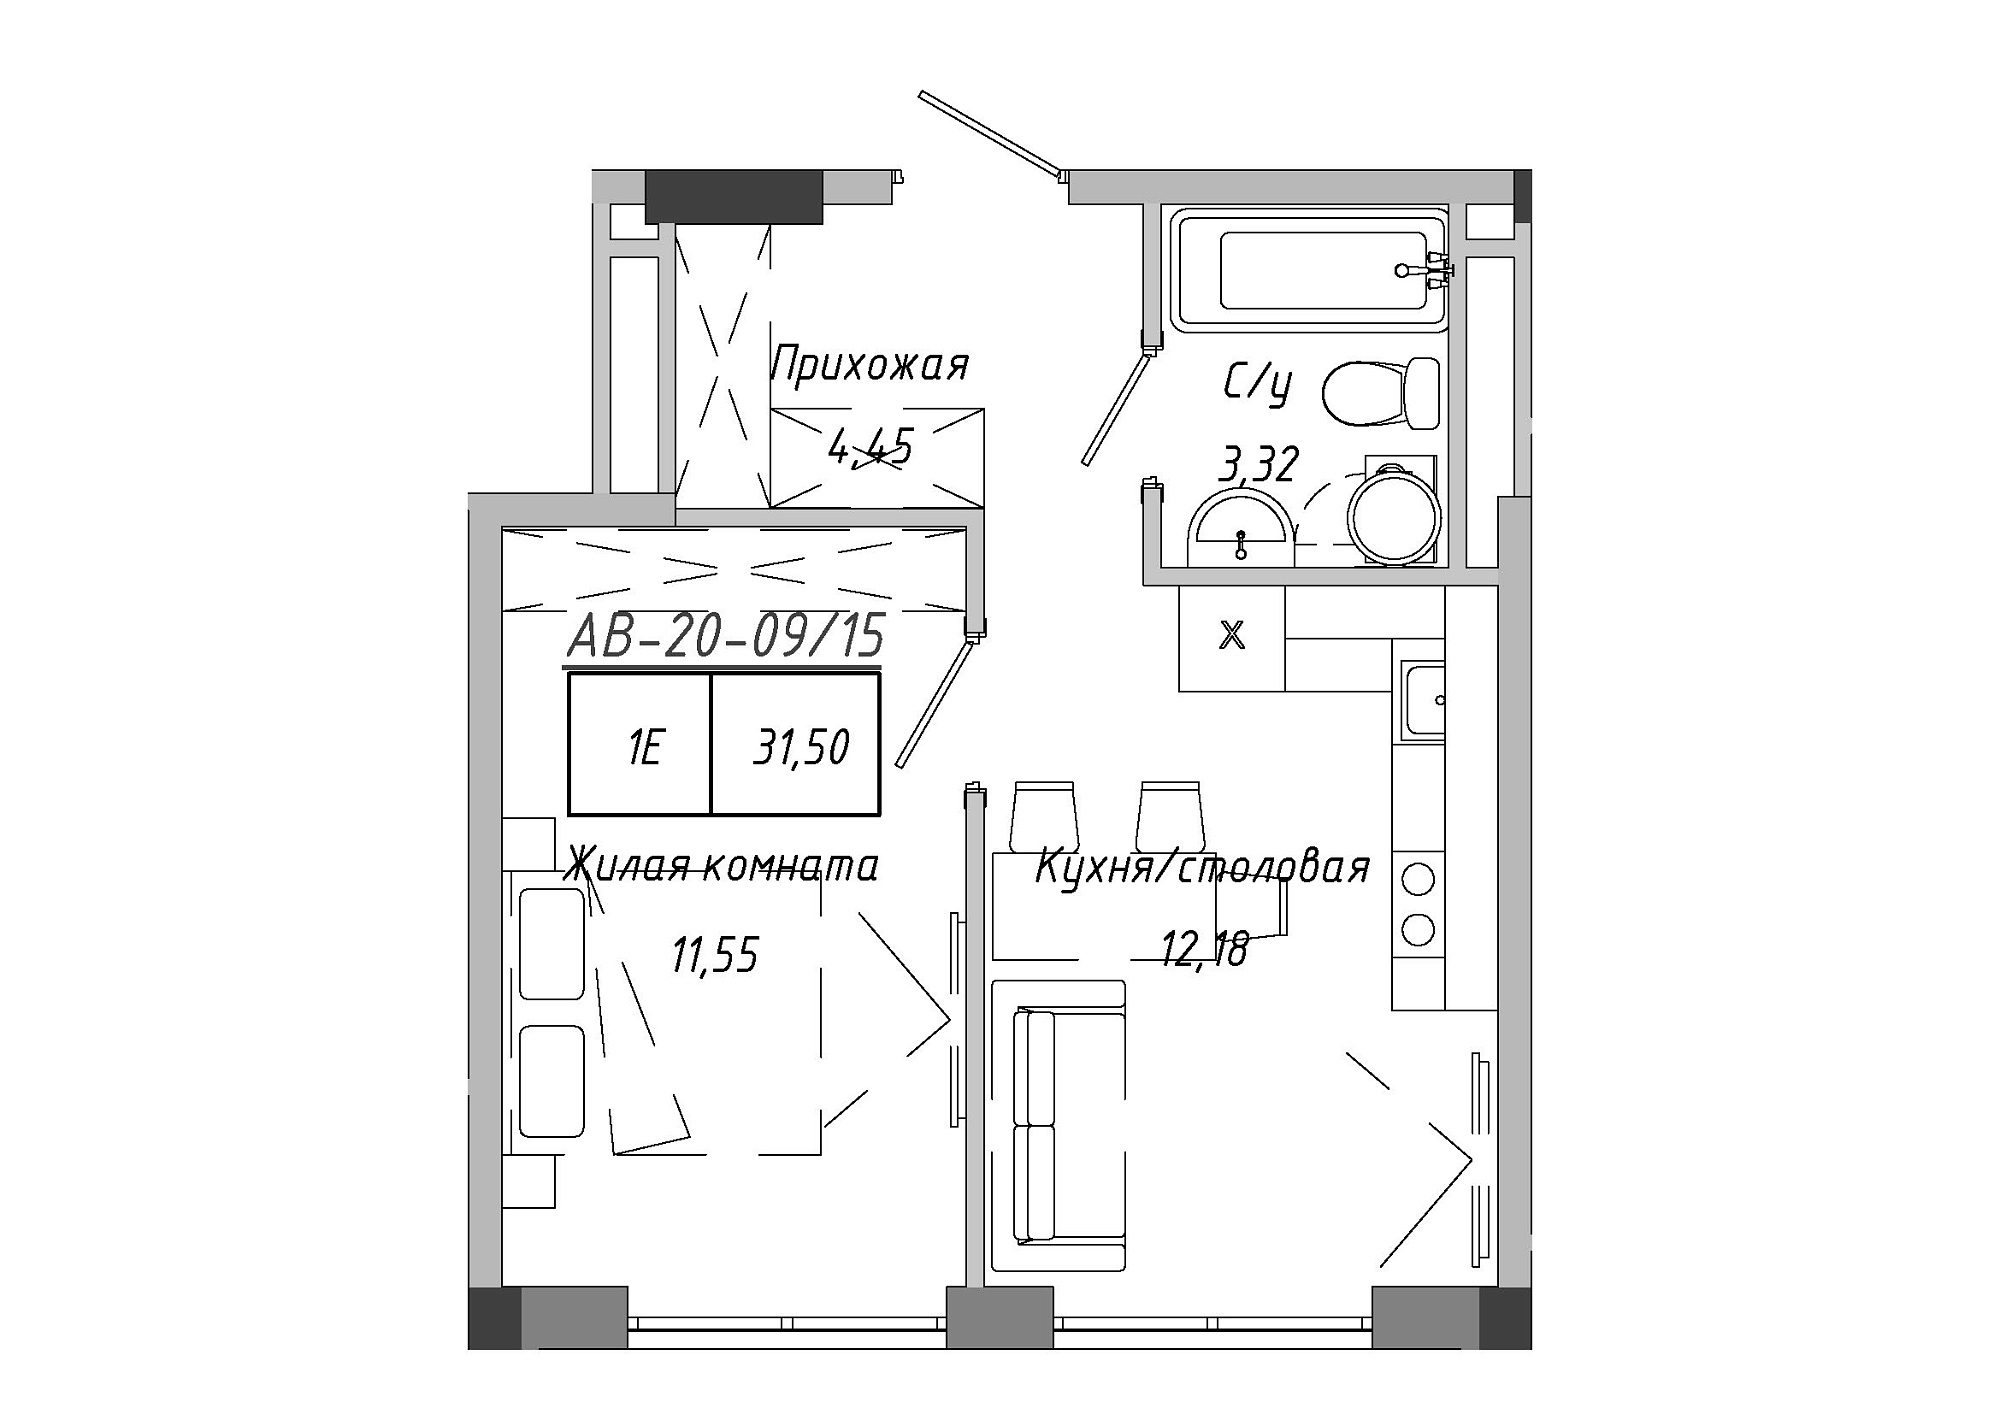 Планировка 1-к квартира площей 31.51м2, AB-20-09/00015.